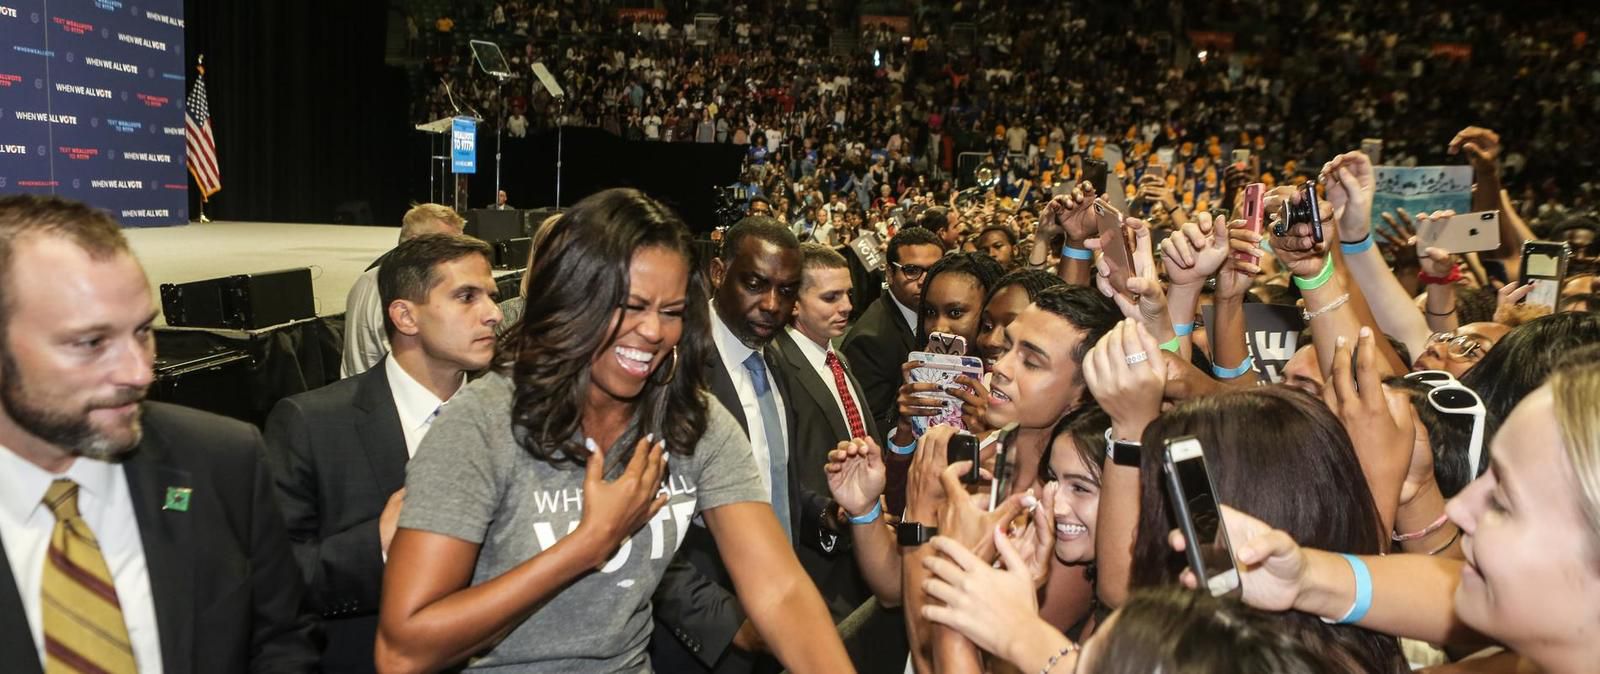 Michelle Obama, une mégastar à la conquête de l'Amérique